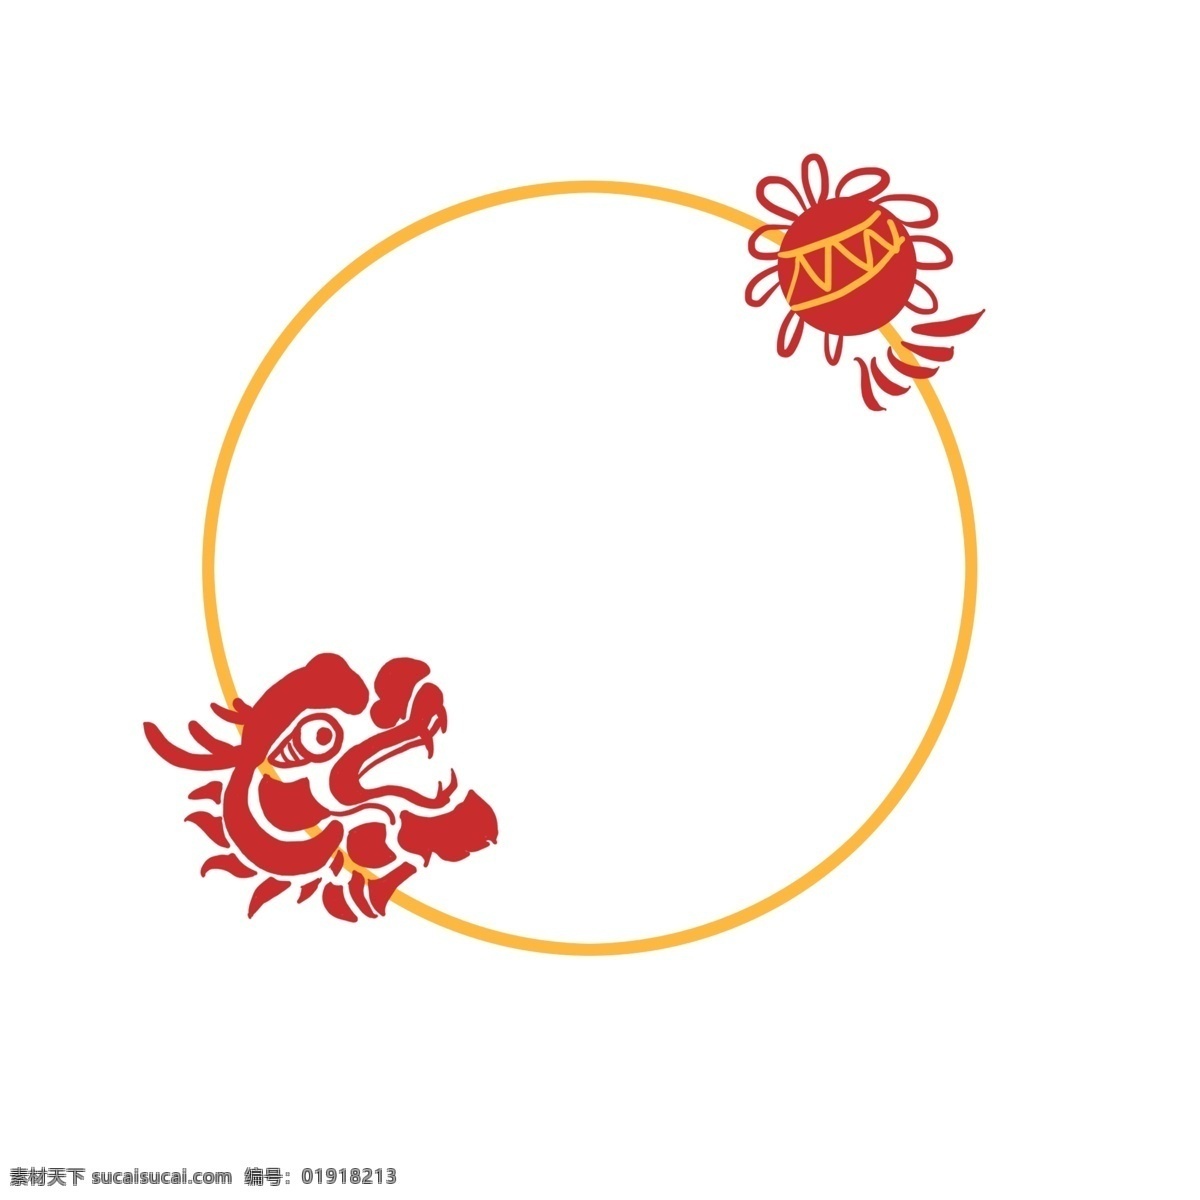 中国 风 龙狮 彩球 边框 插画 手绘 传统 红色 中国风 矢量图 边框装饰 边框设计